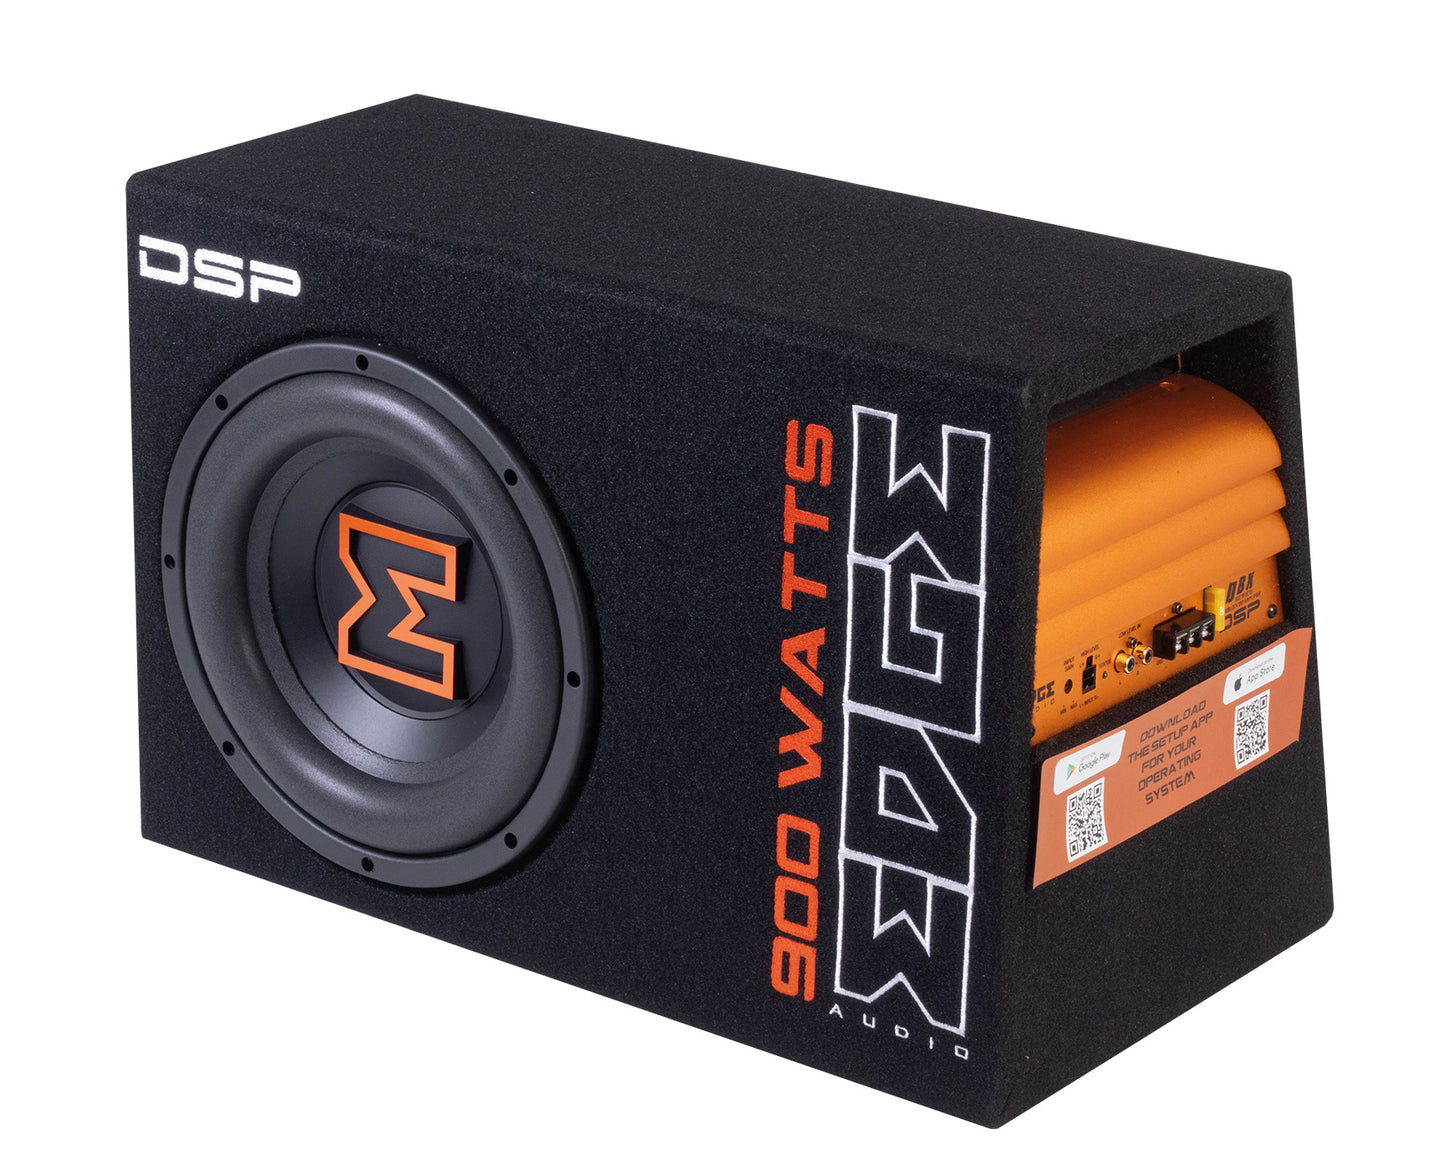 EDBX10ADSP-E3 | EDGE DBX Series 10 inch 900 watts Active Bass Enclosure DSP